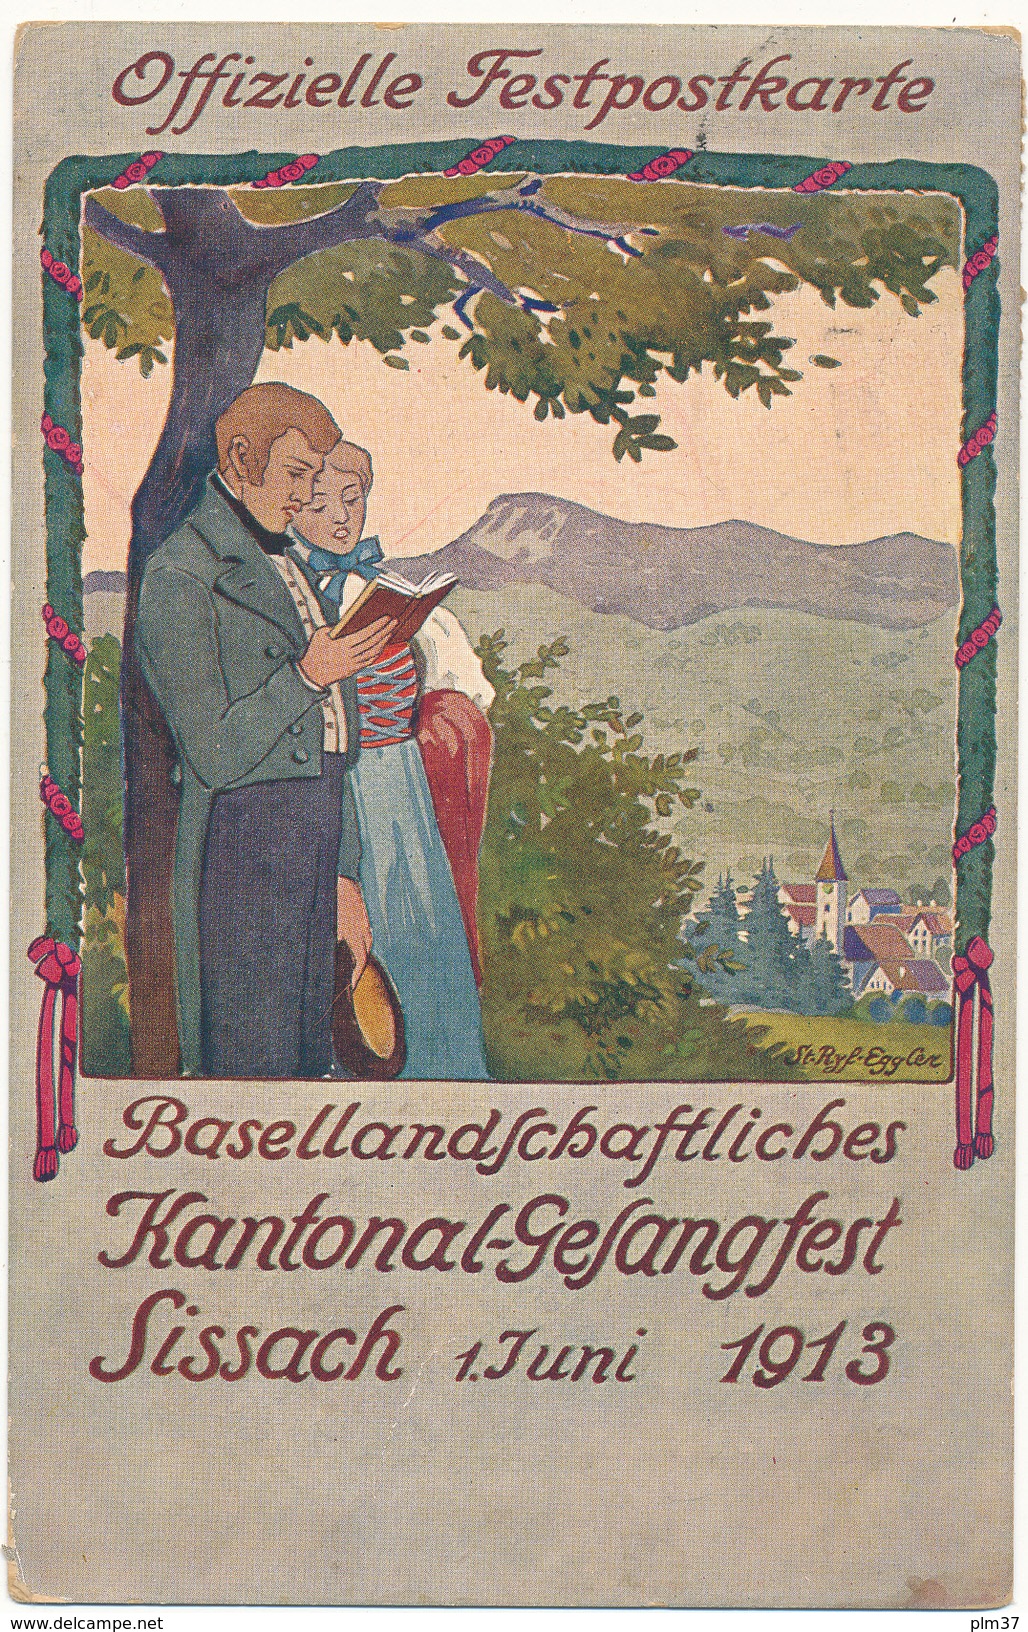 SISSACH - Offizielle Festpostkarte, 1913 - 2 Scans - Sissach